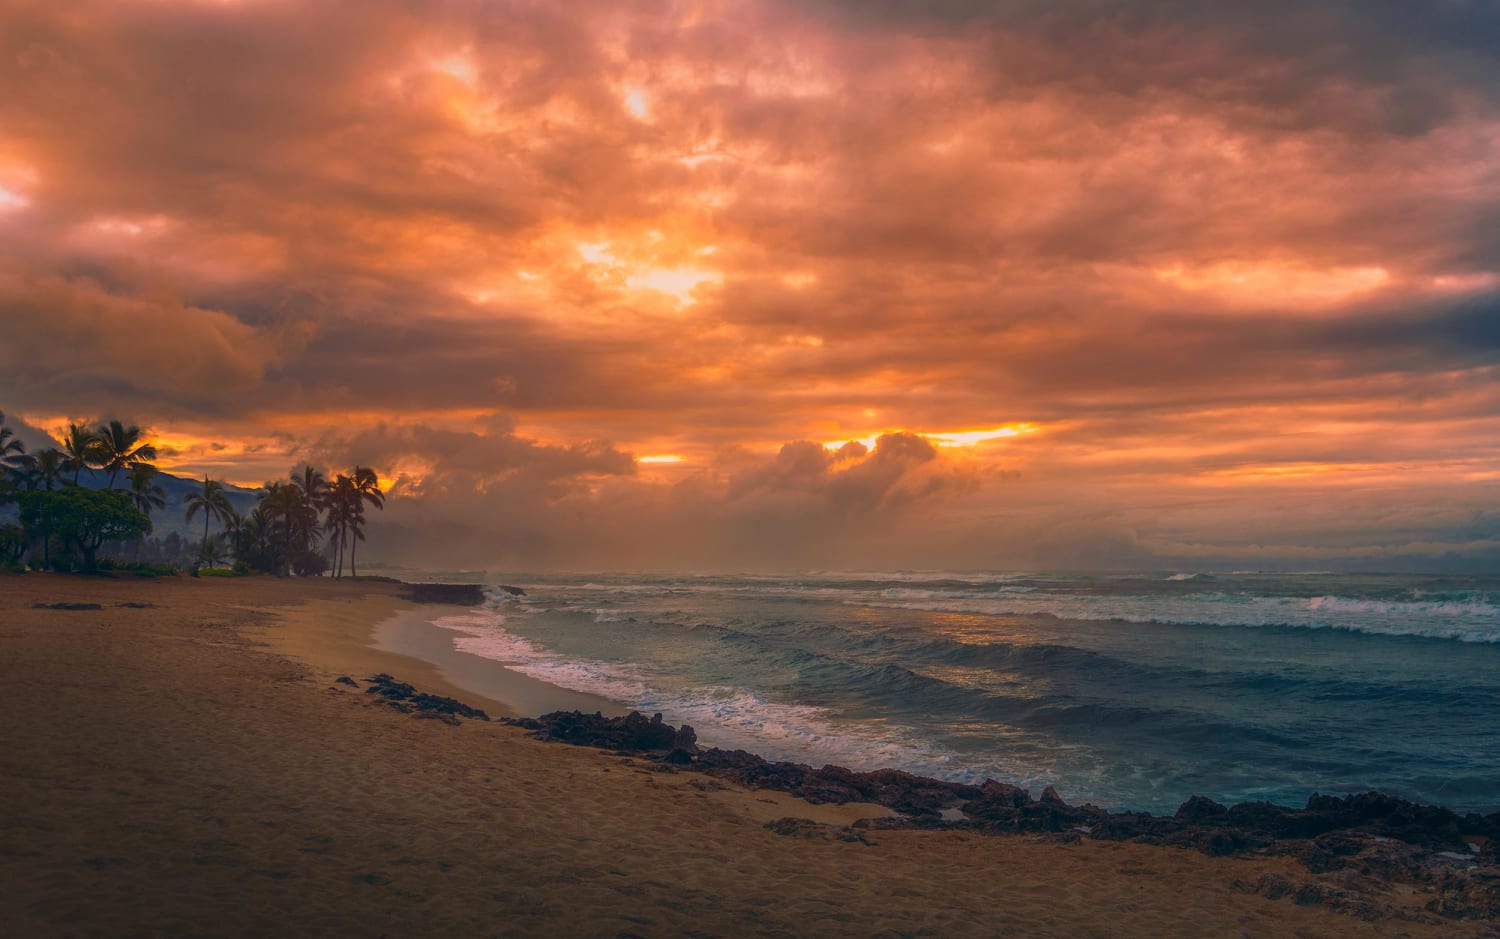 Sunset and Waves on Hale'iwa Ali'i Beach, O'ahu, Hawaii